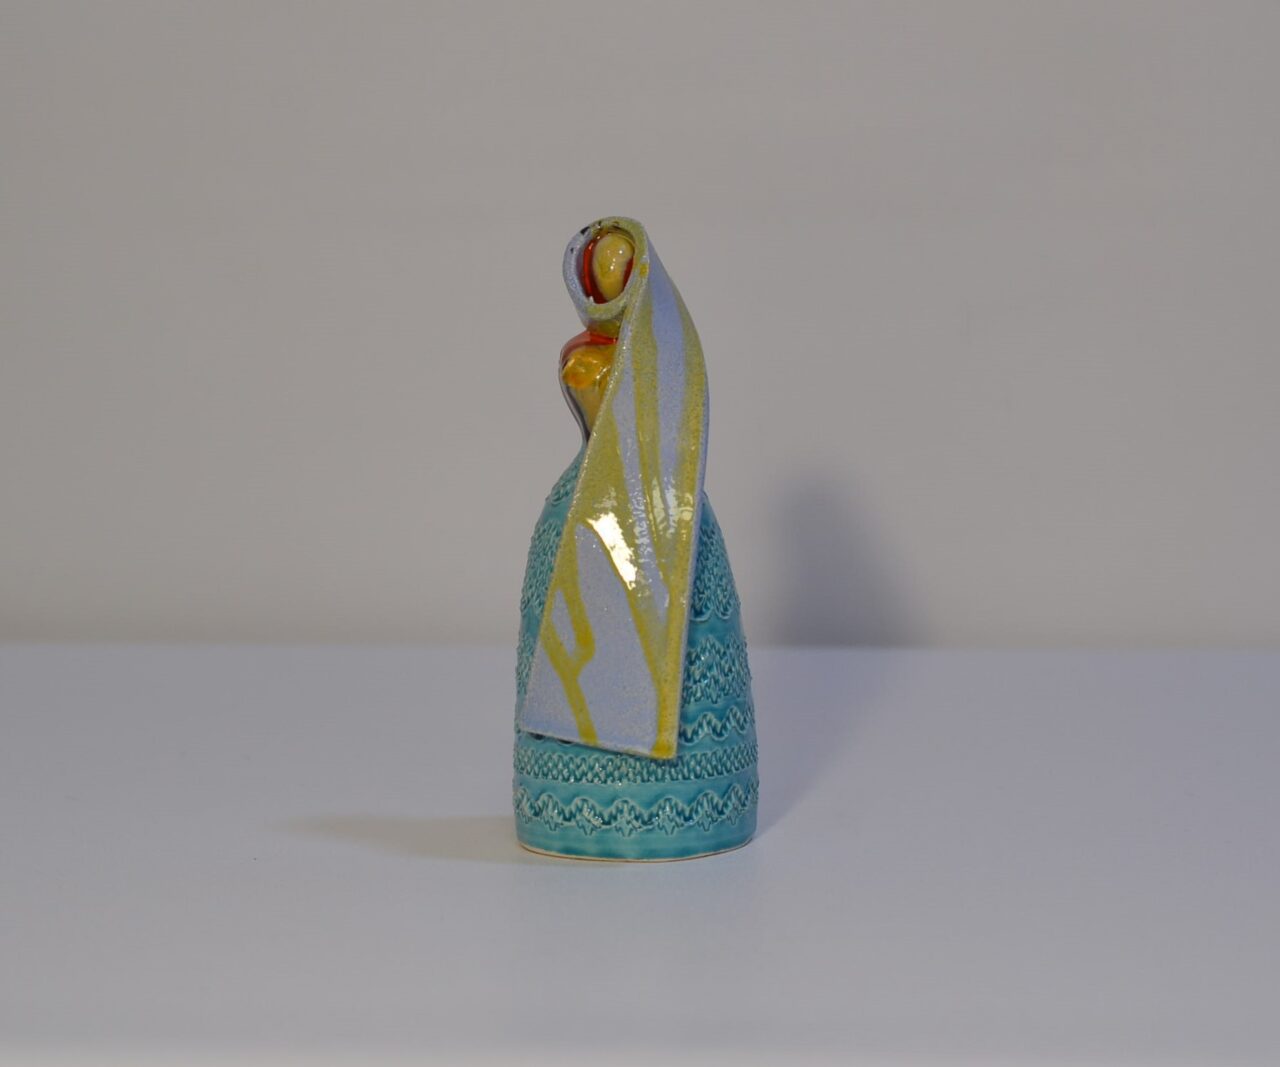 Donna sarda in ceramica “Tzia” rappresentante la Dea Madre – Ugo Serpi